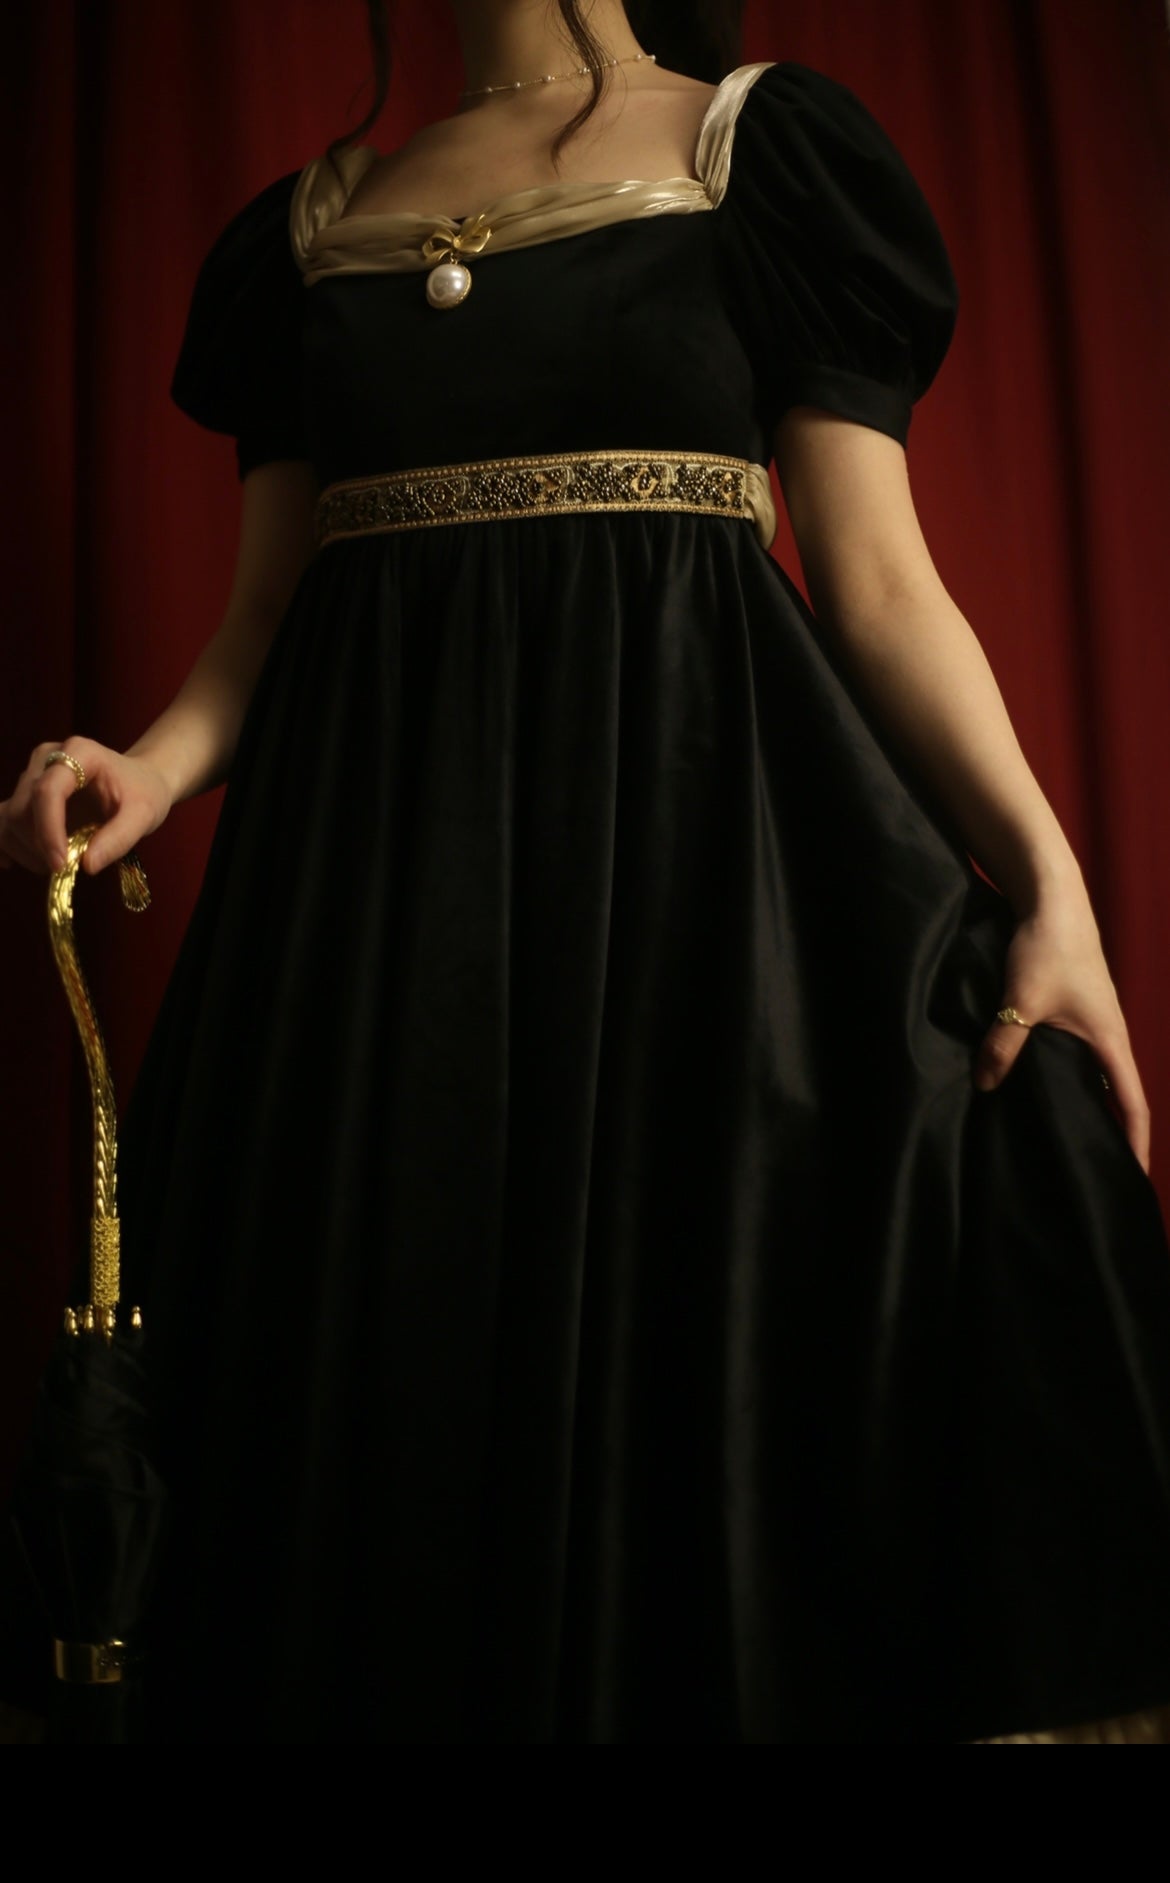 Bridgerton Inspired Black Velvet Regency Era Ball Gown - Black Dress Plus Size - WonderlandByLilian